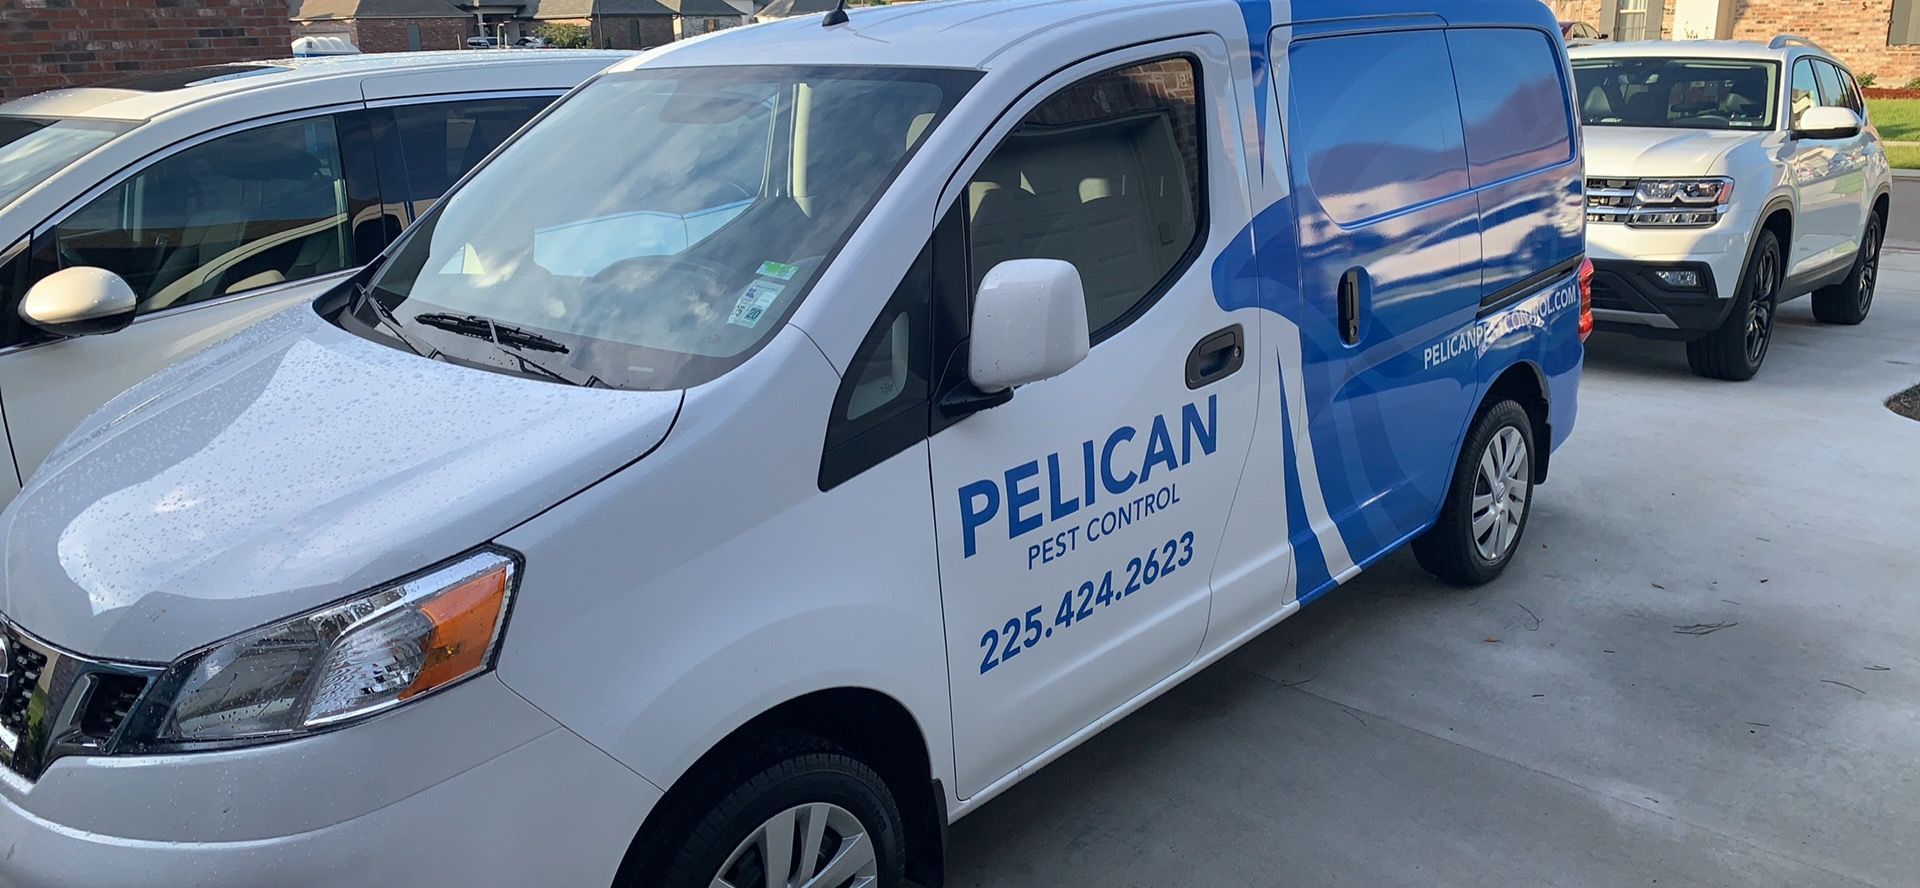 Spider Control Pelican Van